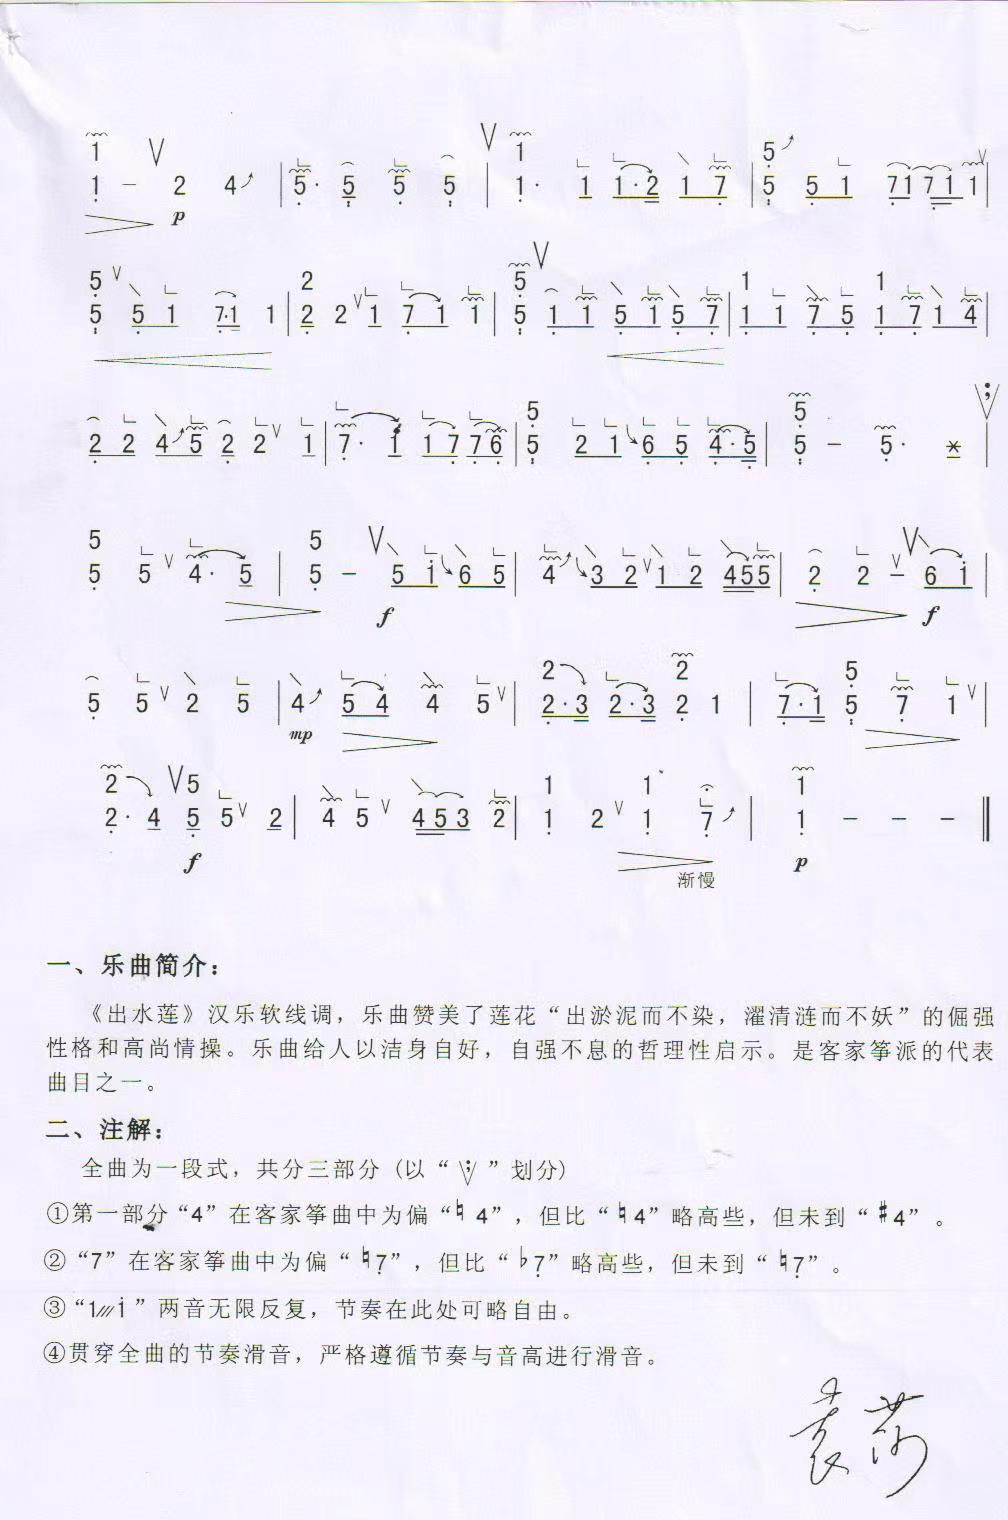 古筝曲《出水莲》袁莎版完整简谱-静静老师教学演奏